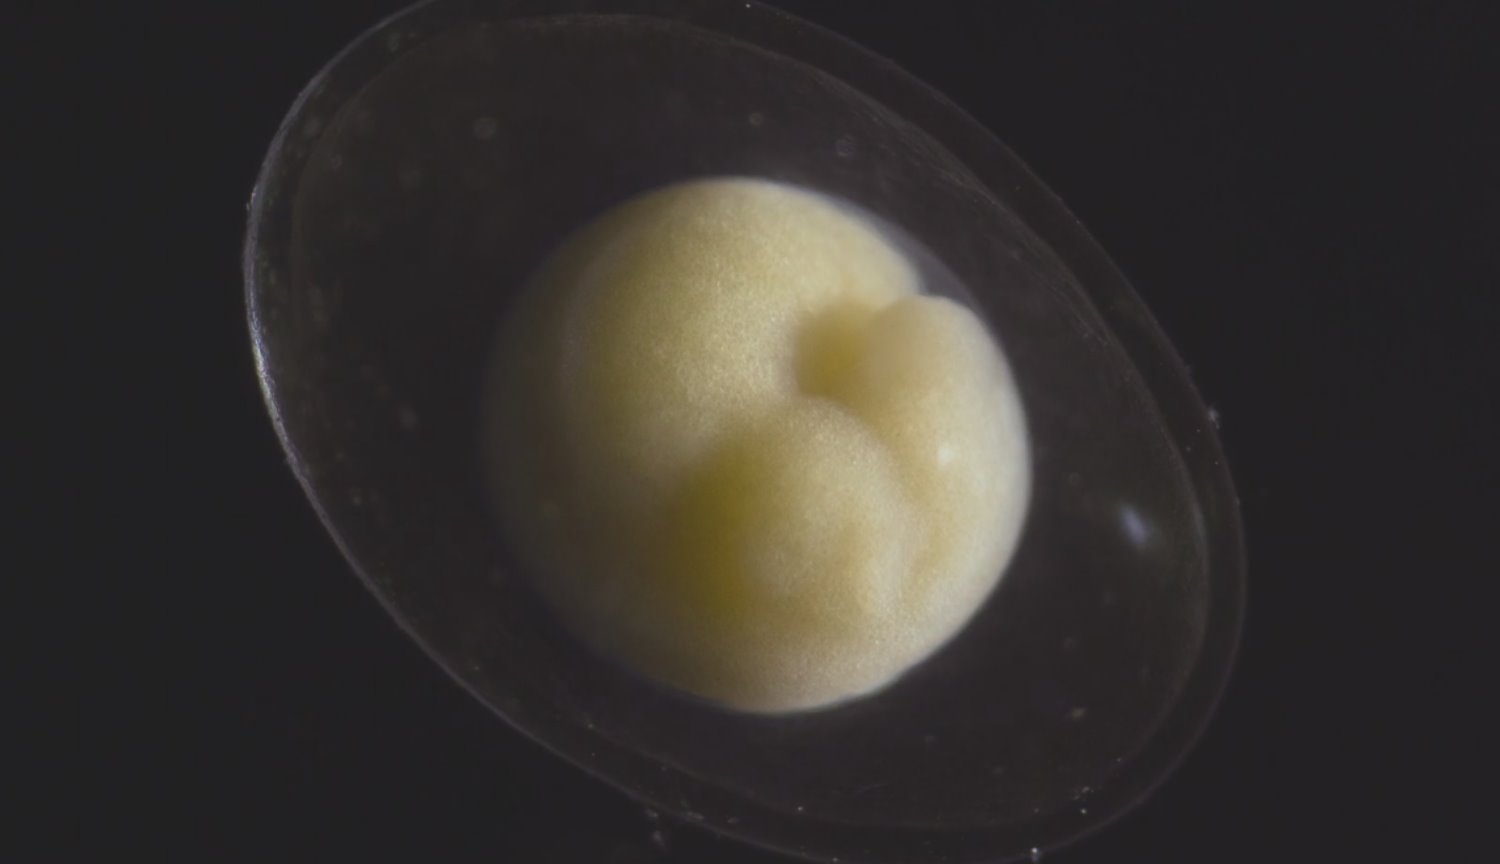 #video | Gibi küçük bir embriyo haline güzel bir canlı organizma?